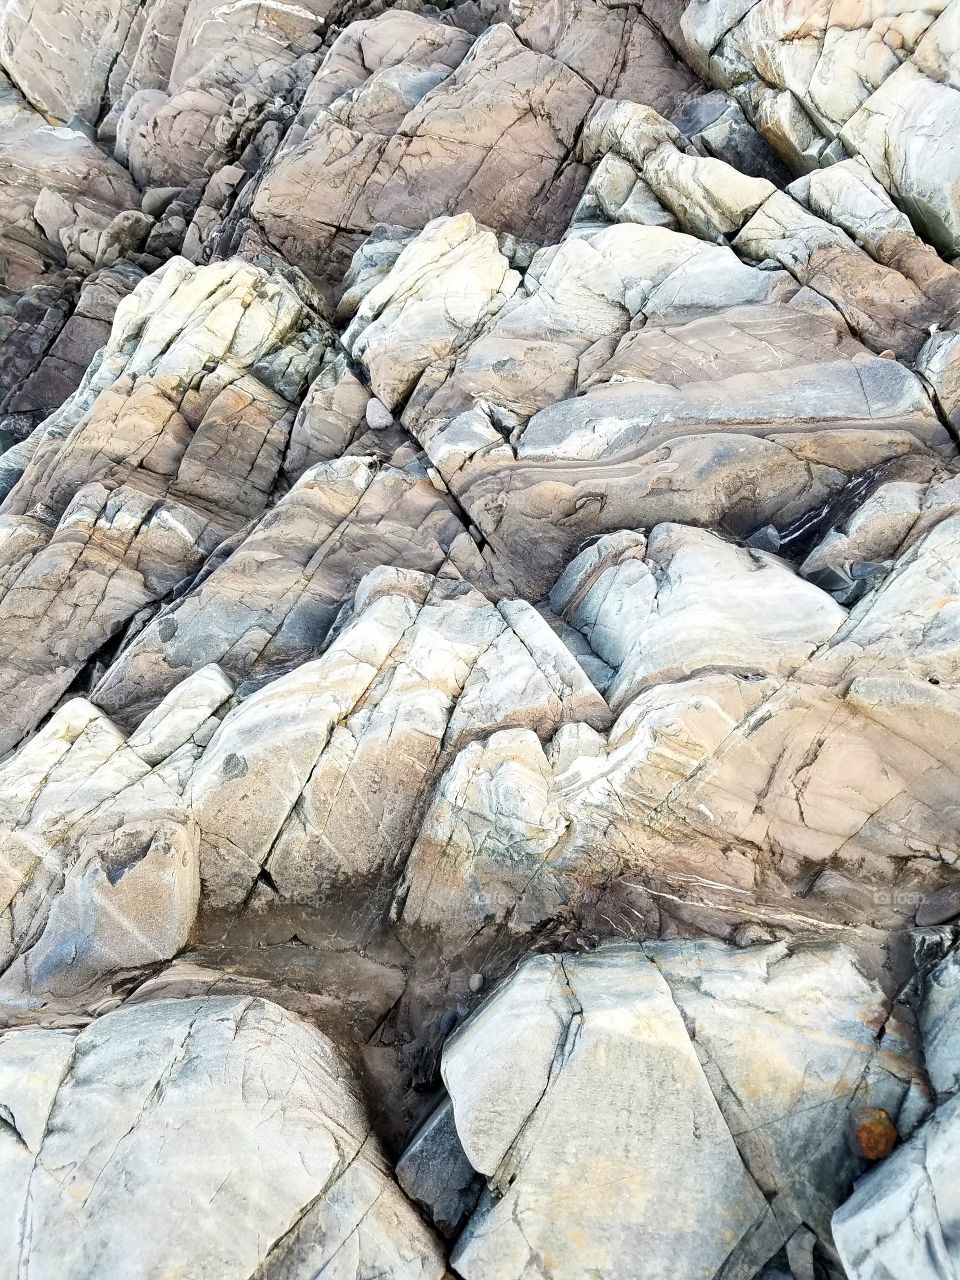 Coastal rock formation